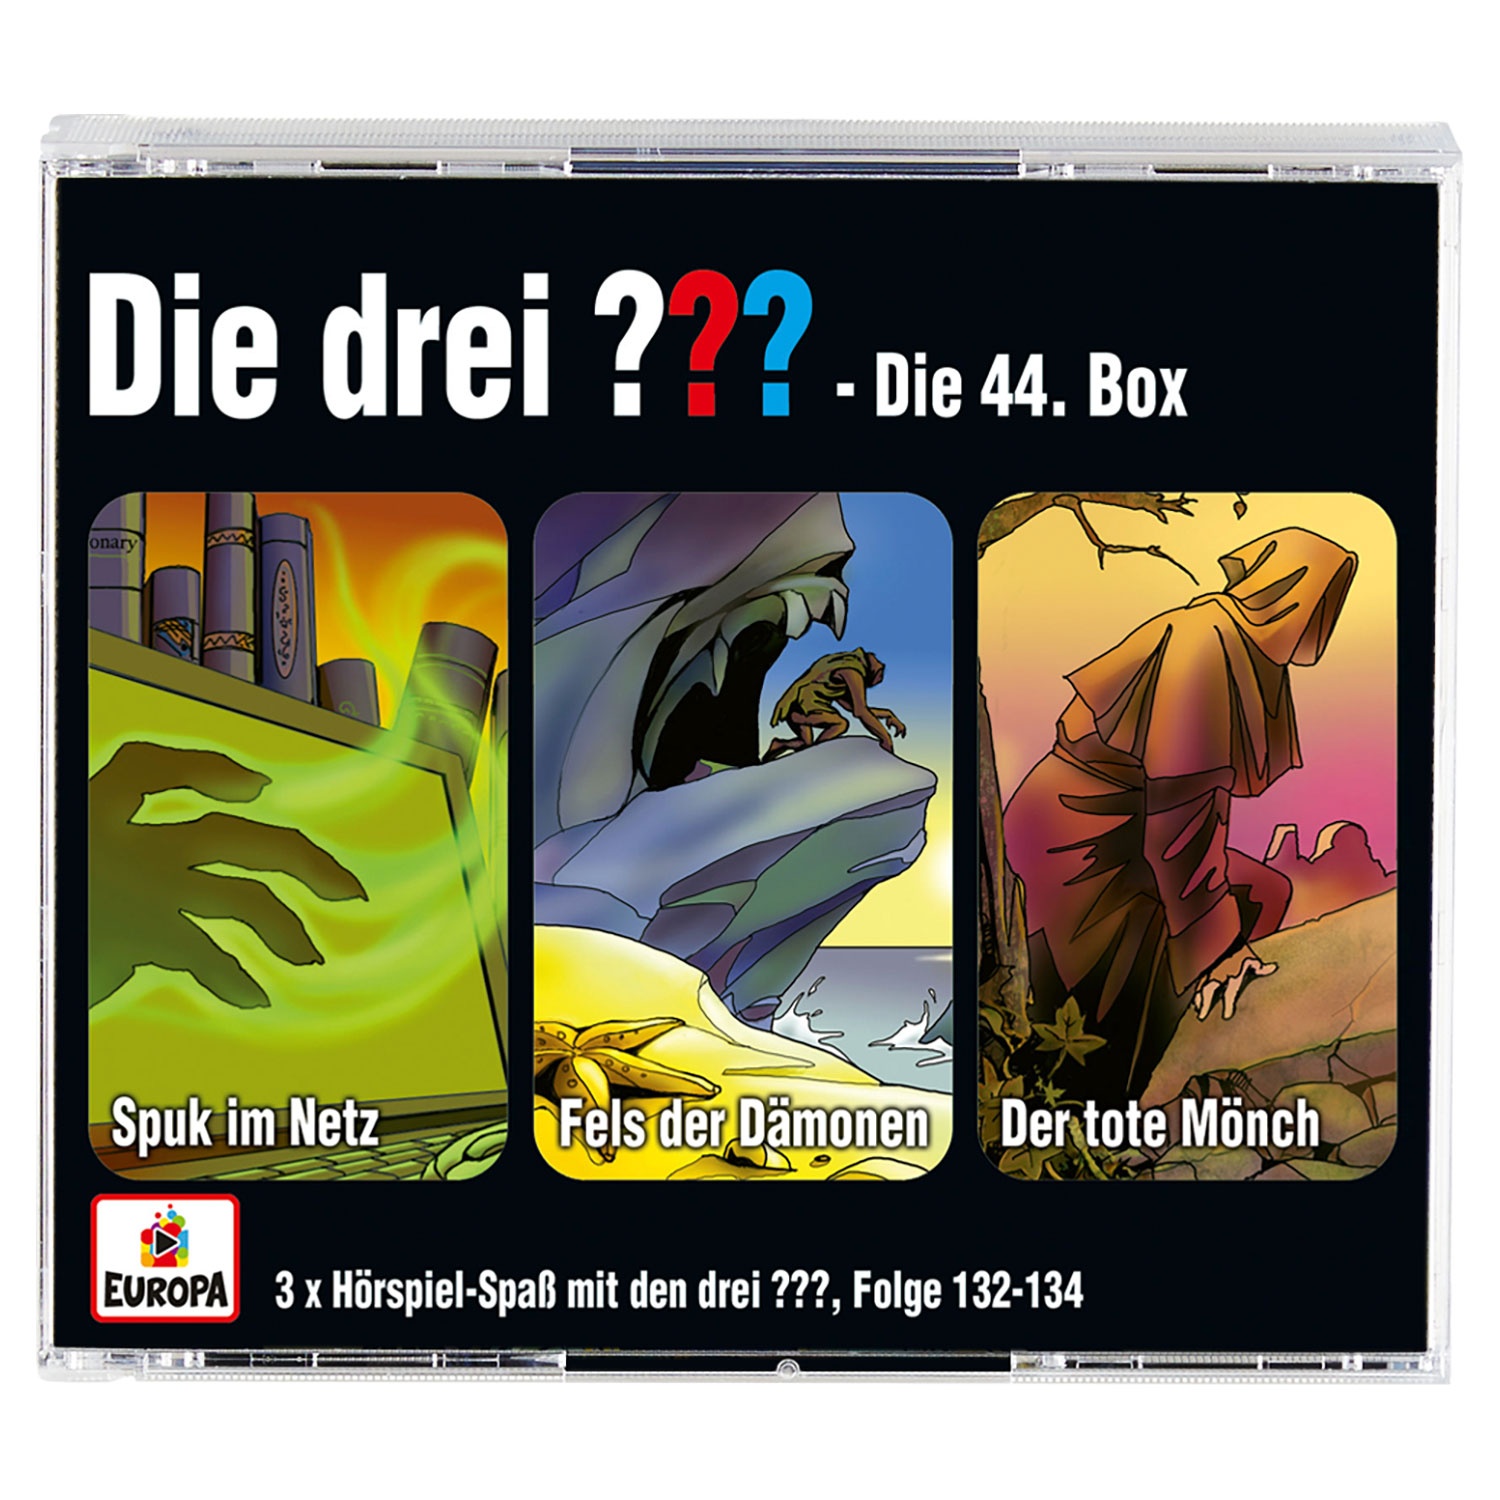 3er-CD-Box „Die drei ???/Kids“ oder „Die drei !!!“